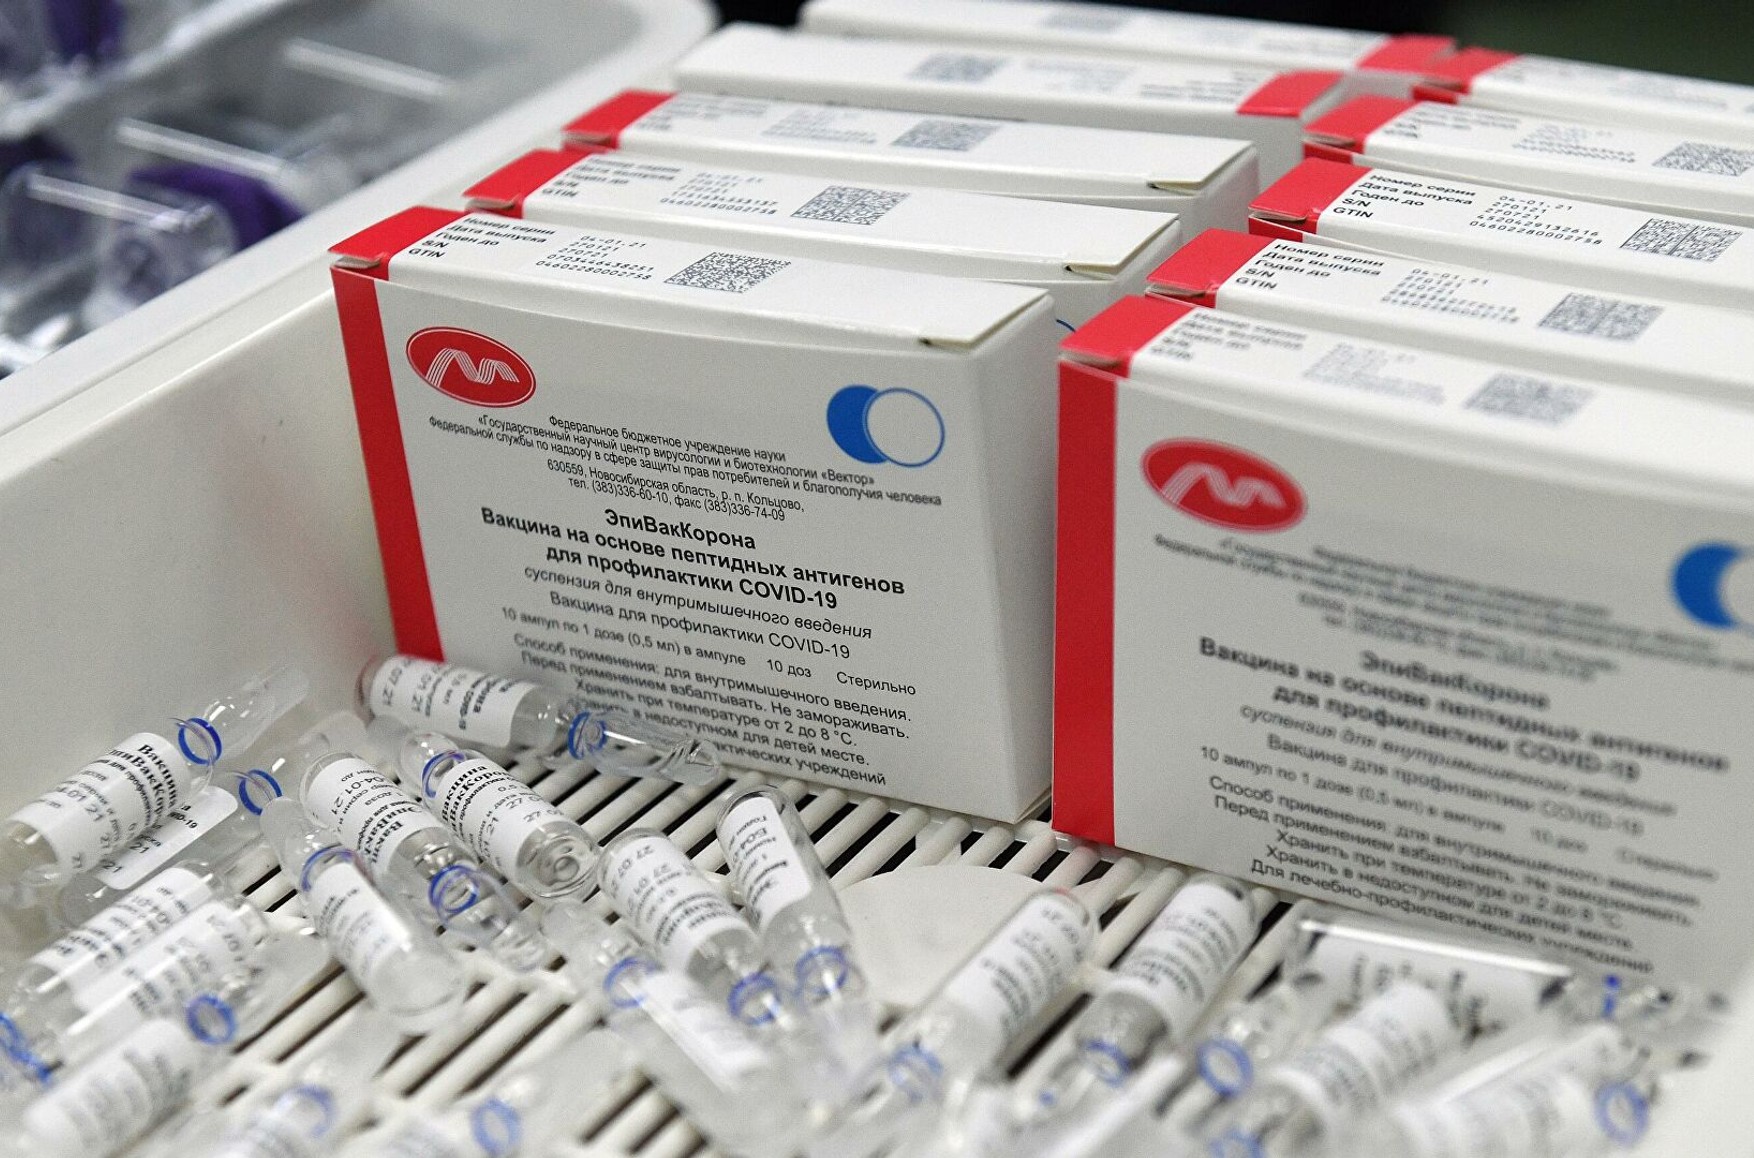 Друга російська вакцина «ЕпіВакКорона» почала надходити в регіони для масової вакцинації населення